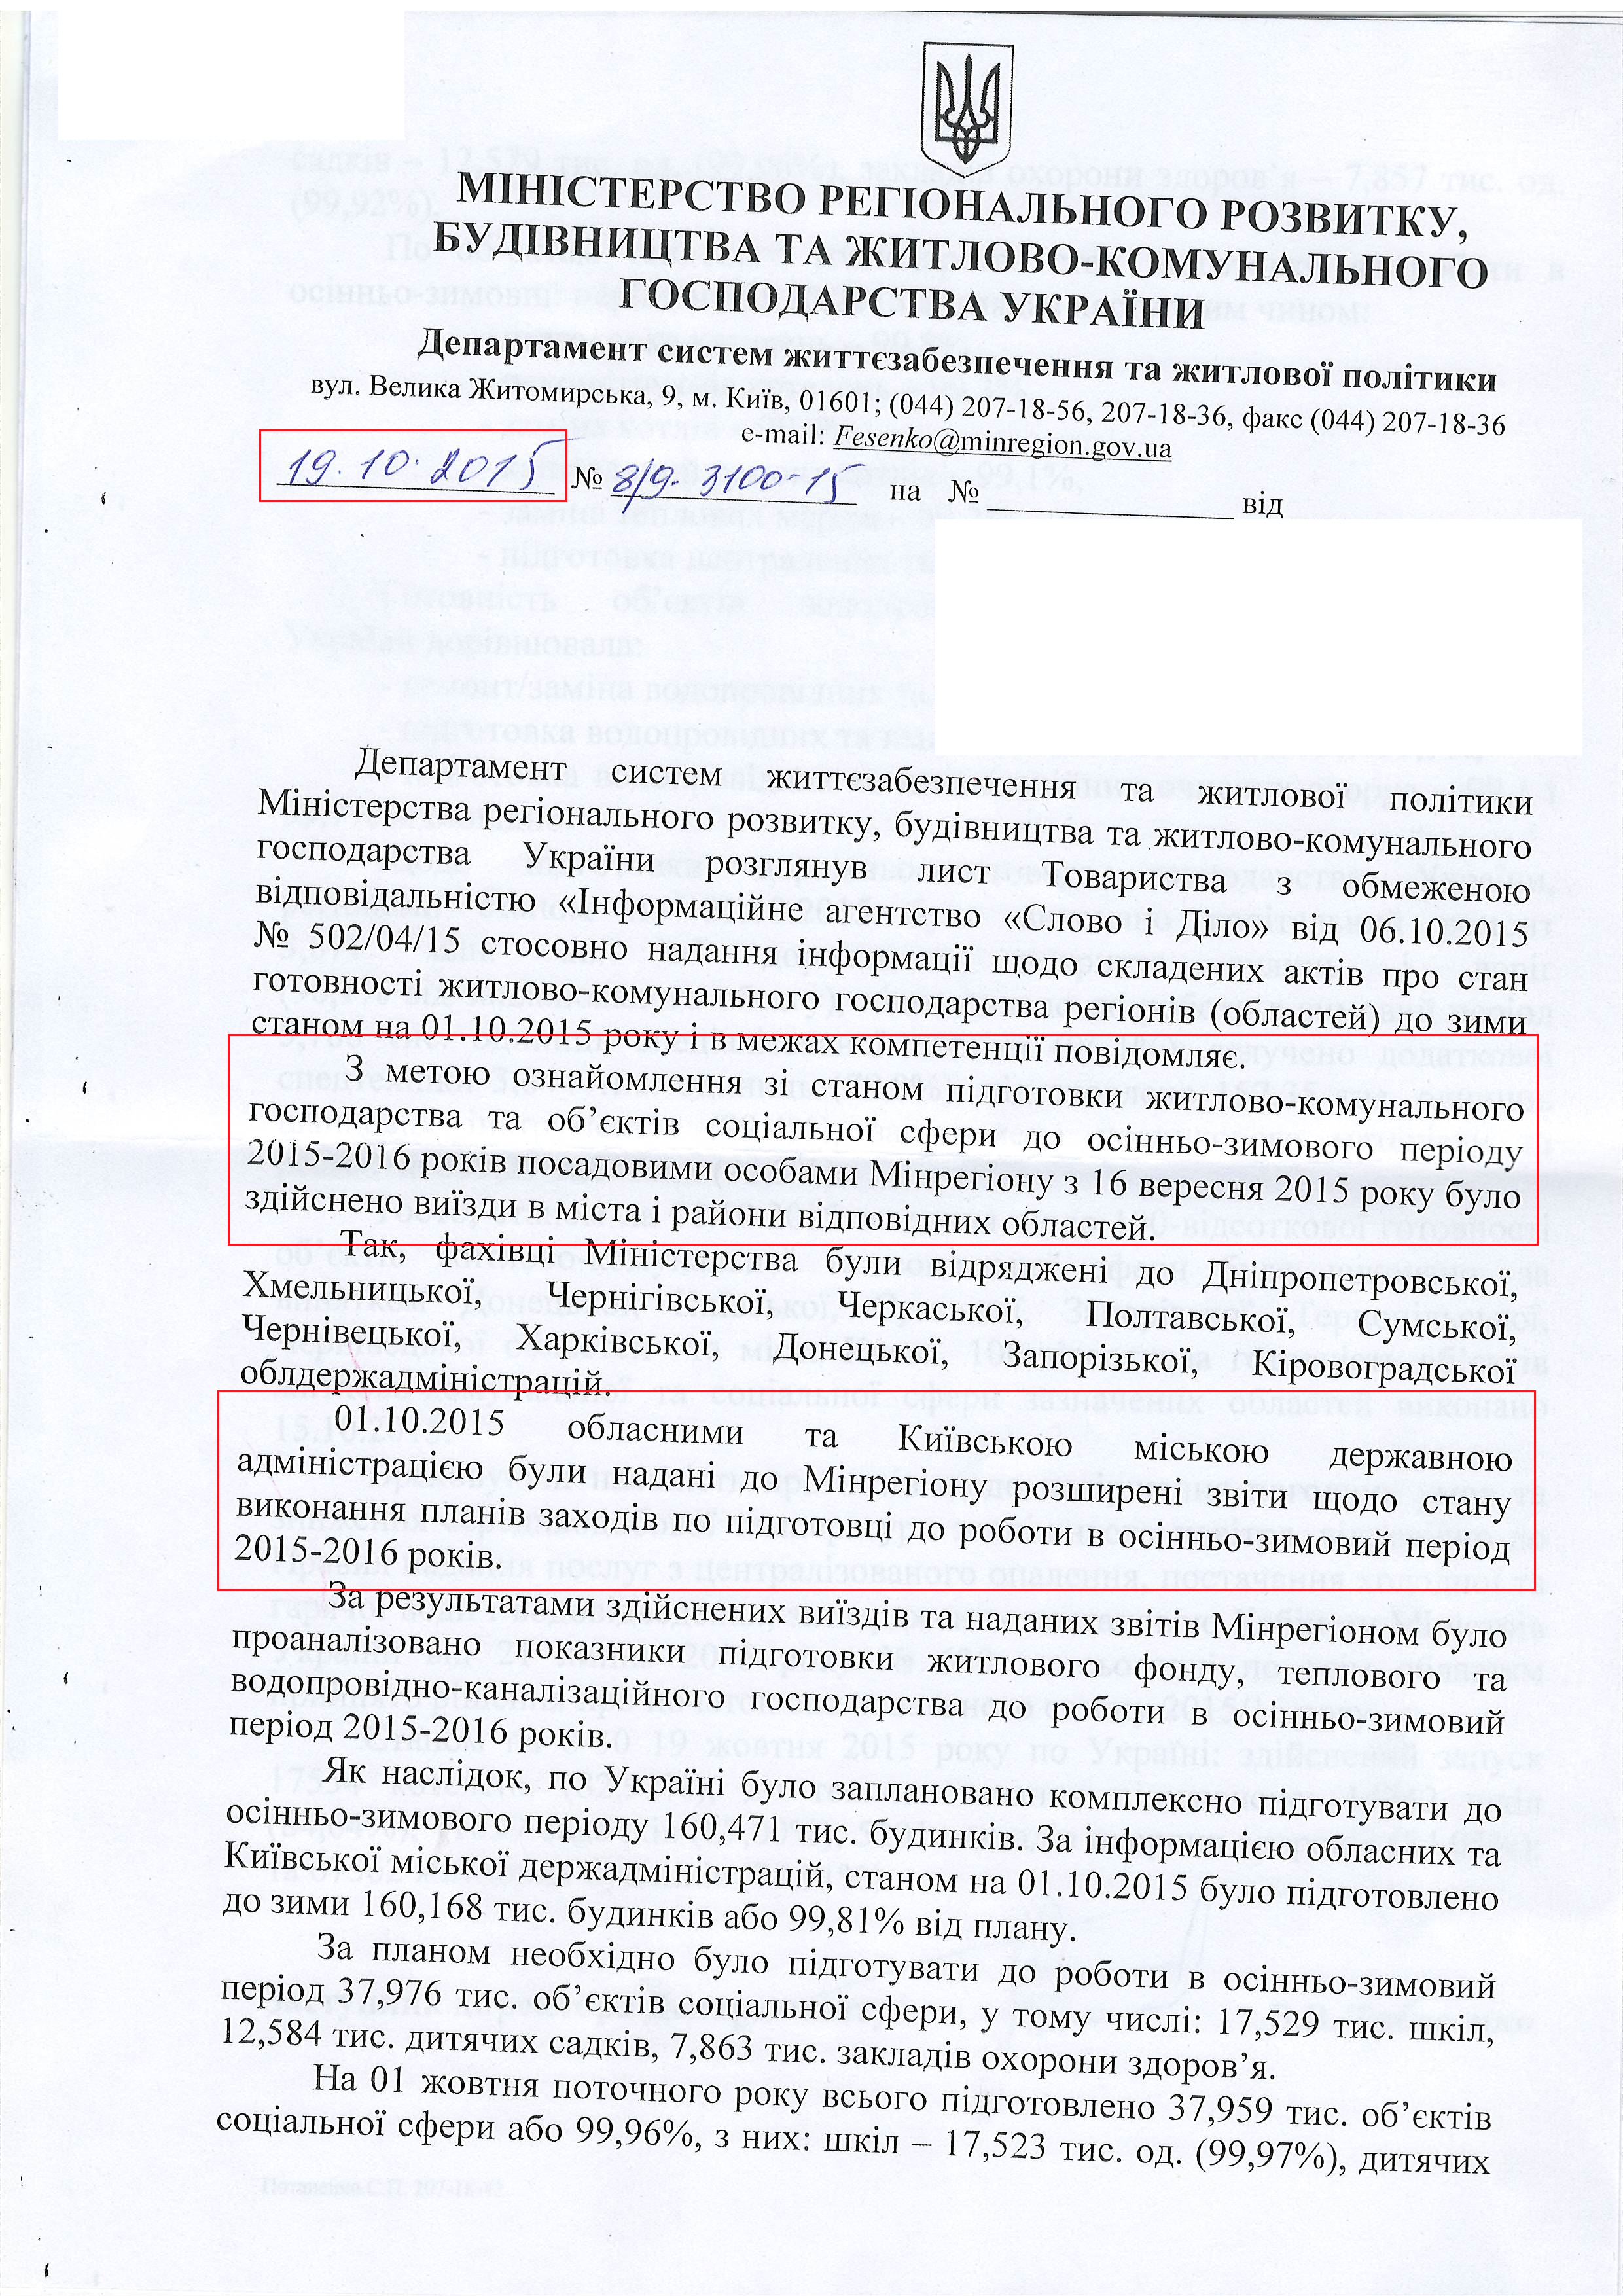 Лист міністерства регіонального розвитку, будівництва та житлово - комунального господарства України від 19 жовтня 2015 року